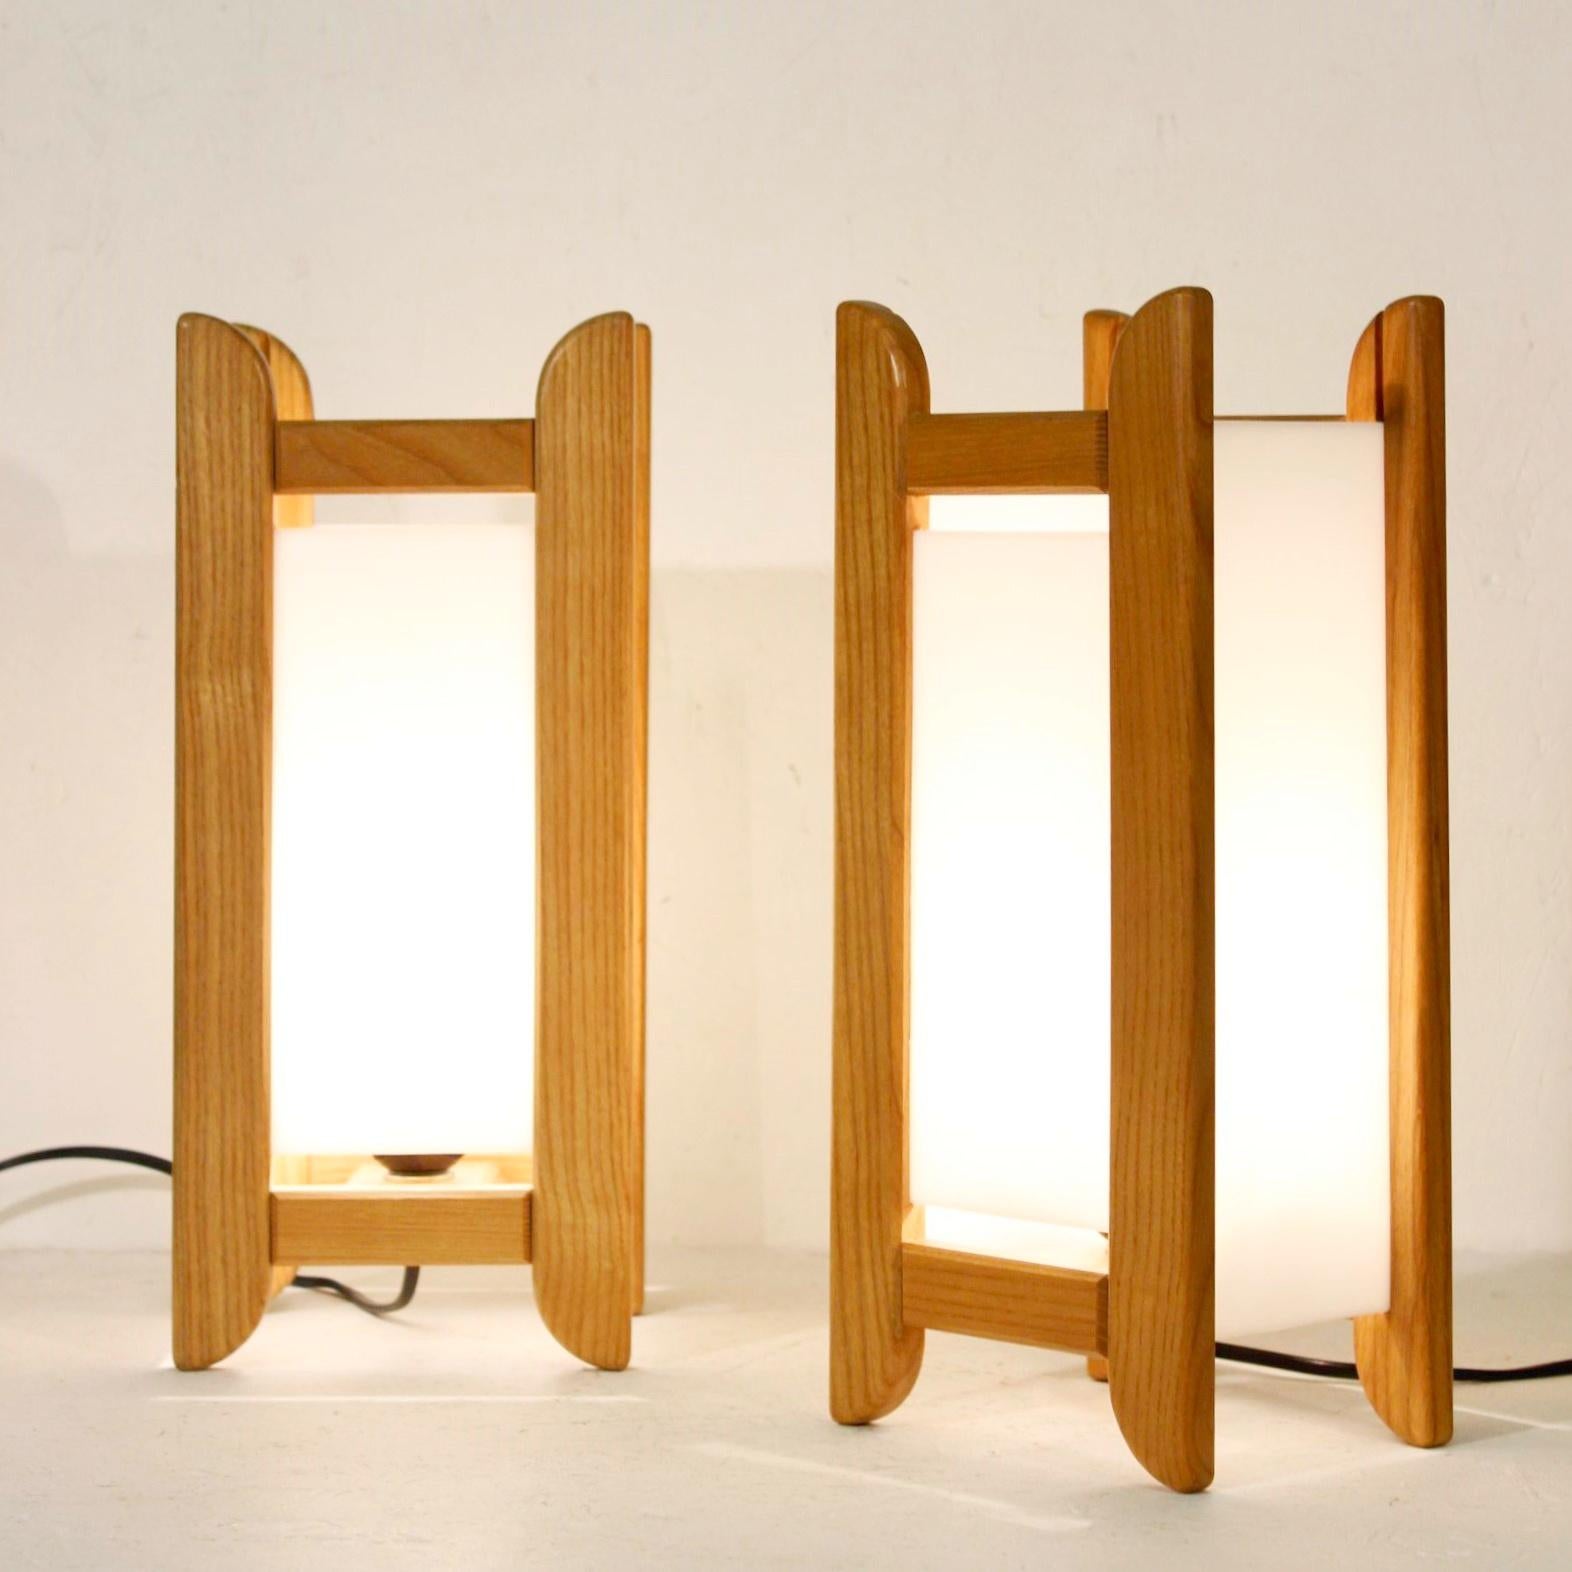 Ein Paar Lampen aus Buche und weißem Acryl, um 1980, signiert von Alain Gaubert. 

Alain Gaubert war ein französischer Kunsttischler, der in den 1980er Jahren für seinen Meditationshocker 